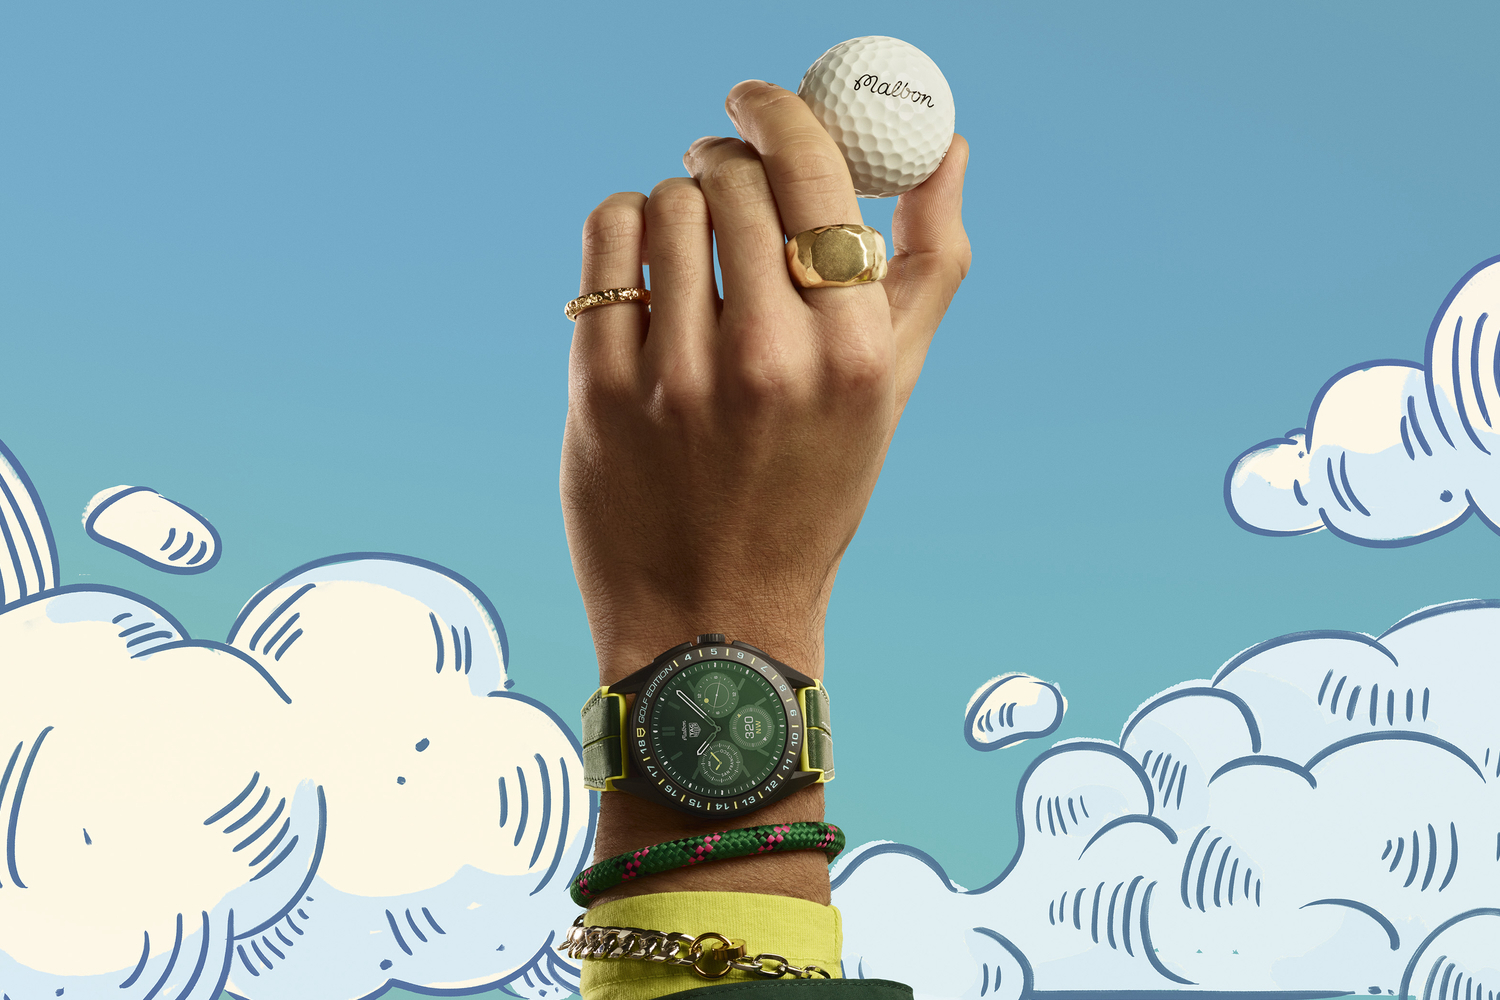 Un'immagine promozionale del Tag Heuer Connected Calibre E4 x Malbon Golf watch.